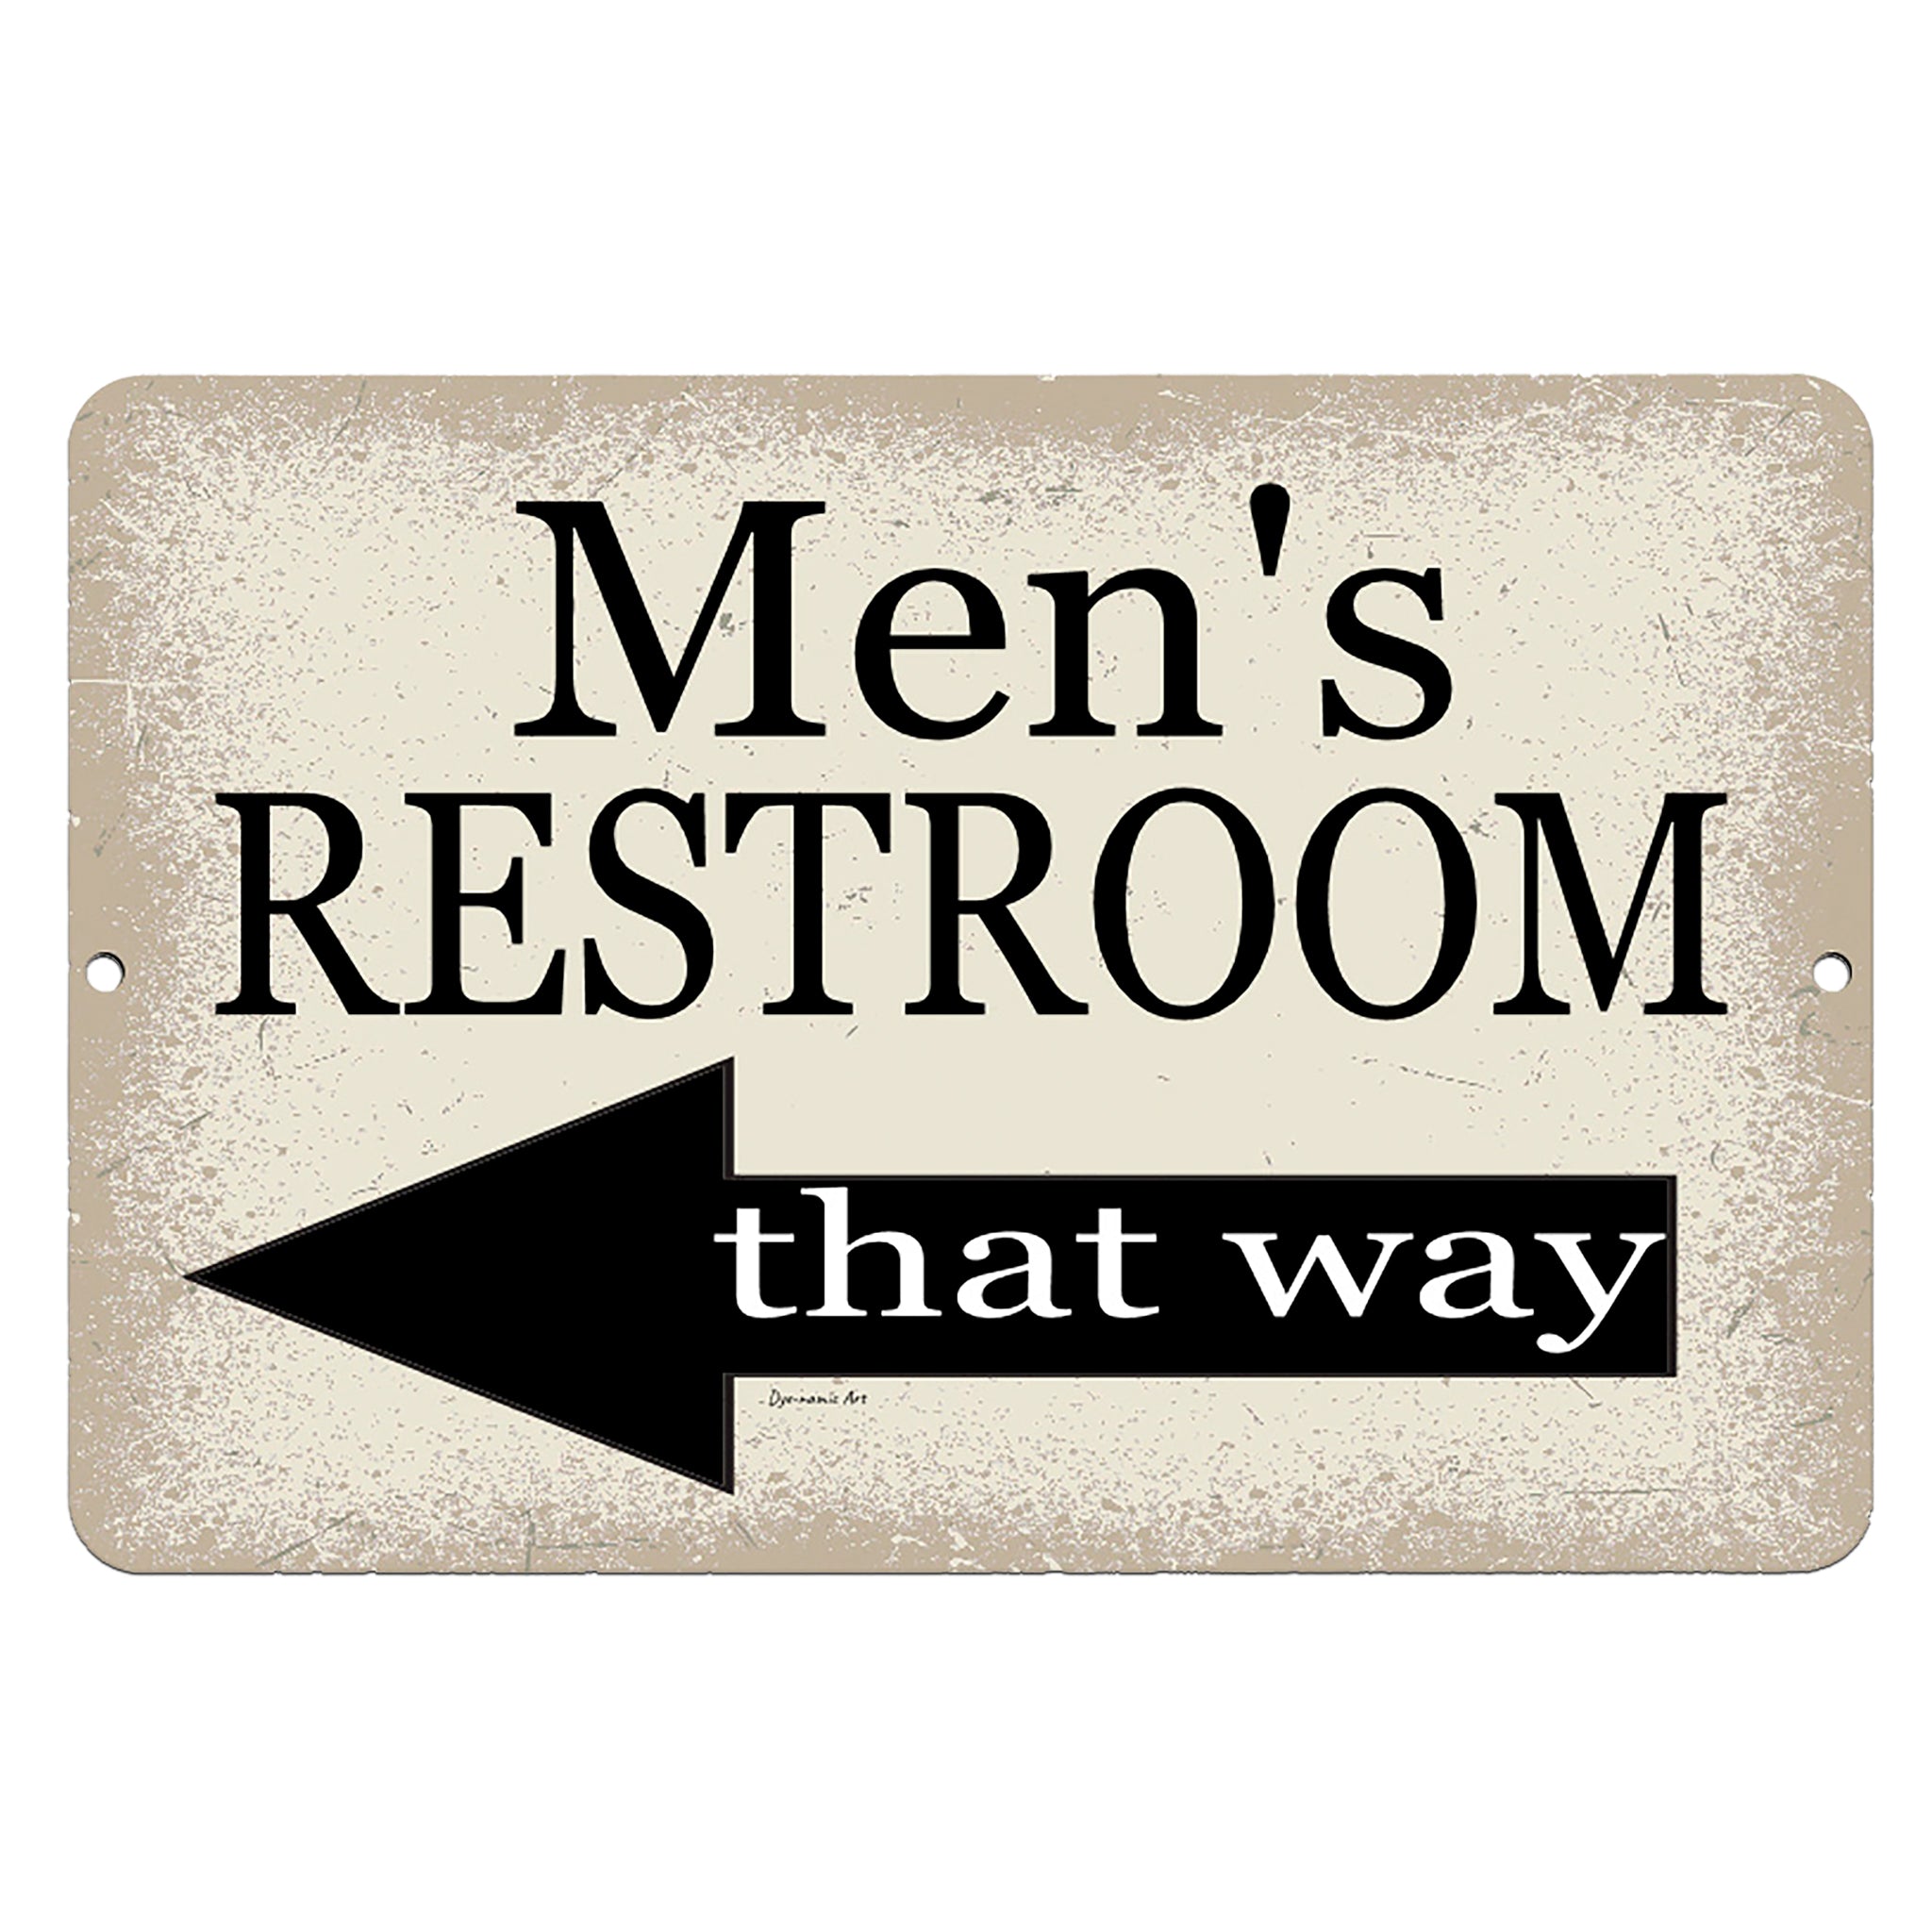 restroom sign right arrow